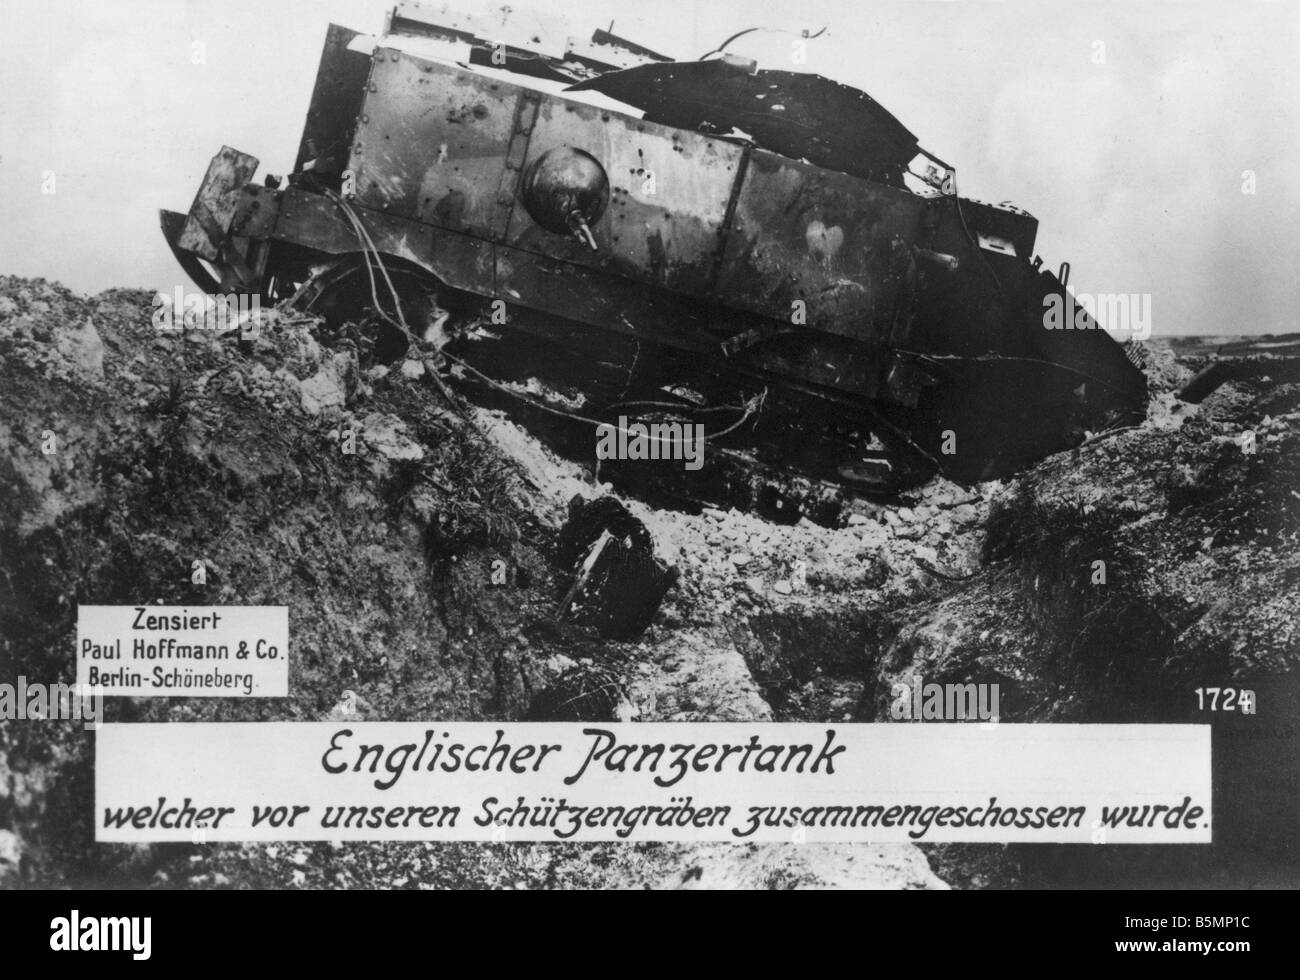 9 1914 0 0 A13 3 Destroyed Engish tank 1914 18 World War 1 1914 18 Western Front Destroyed English tank Photo Stock Photo